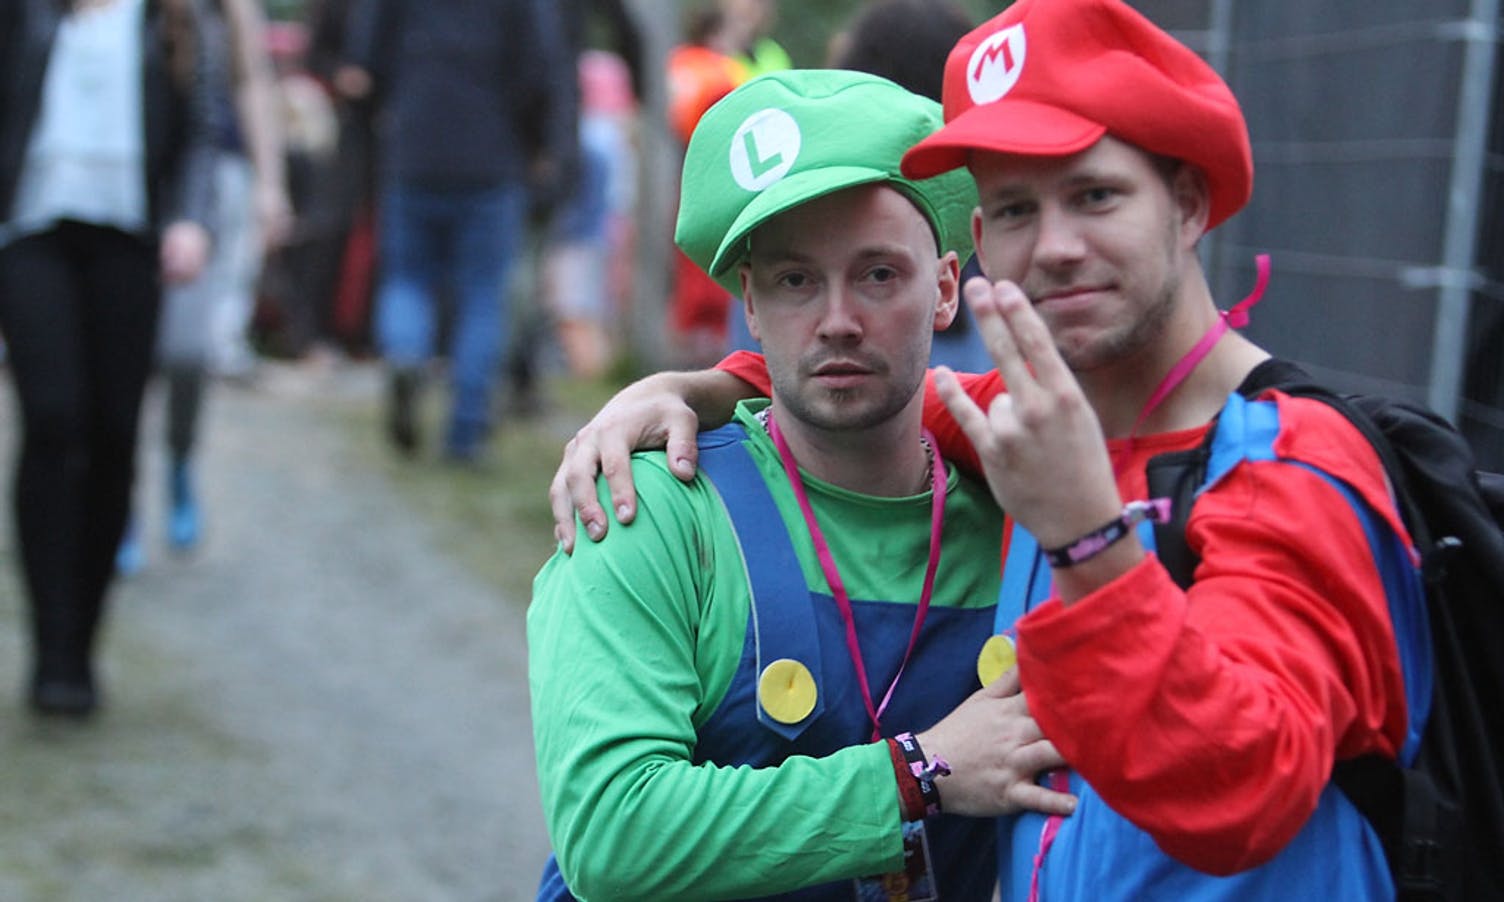 Super Mario og Luigi var ikkje i form til å hoppa så mykje i går. (Foto: KVB)